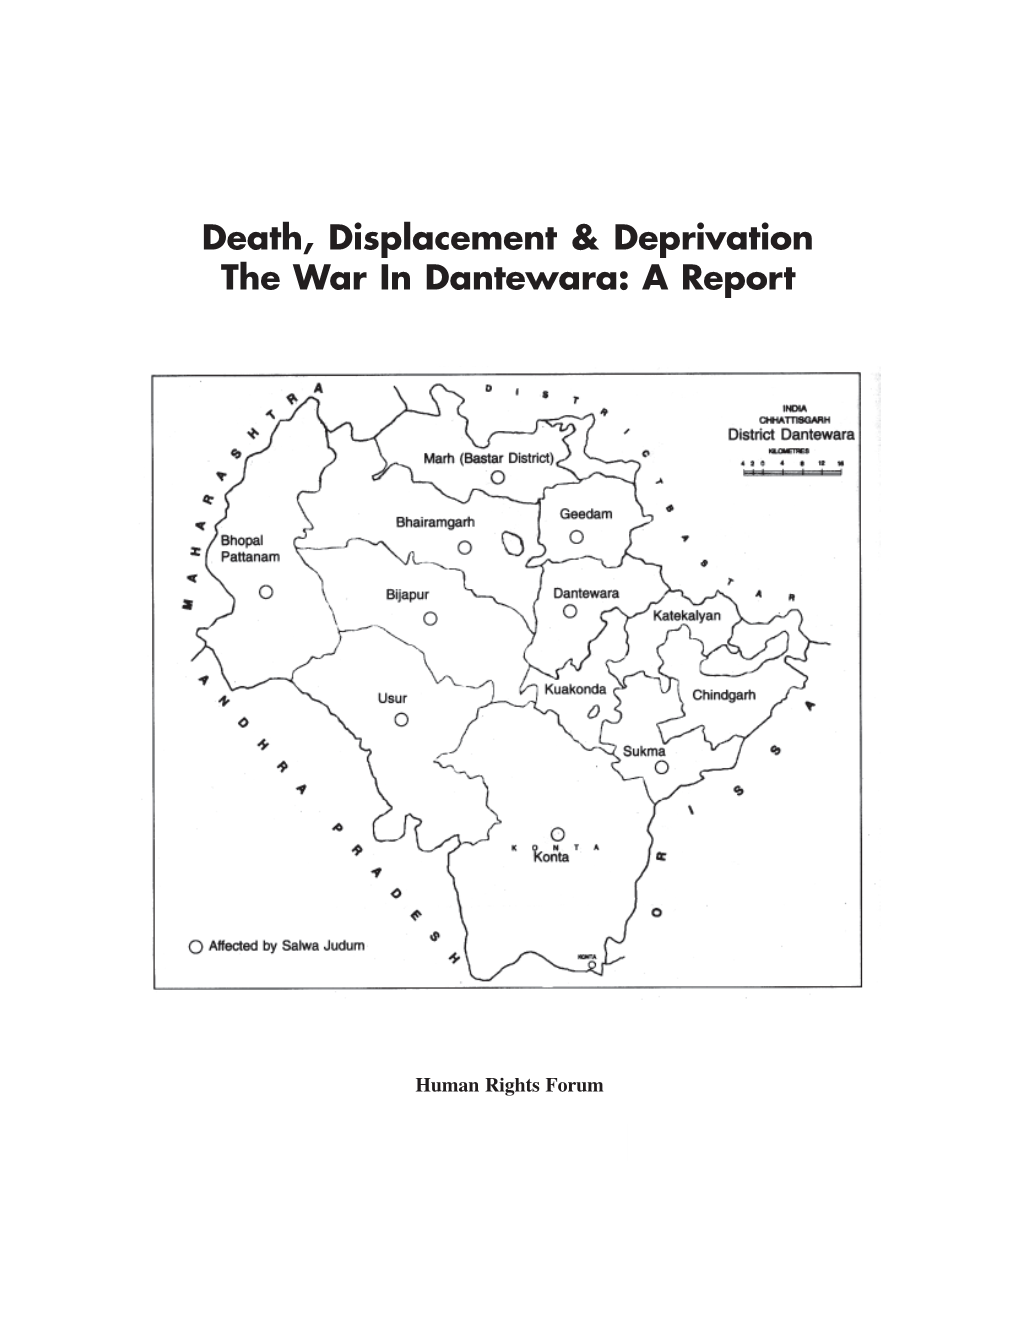 Death, Displacement & Deprivation the War in Dantewara